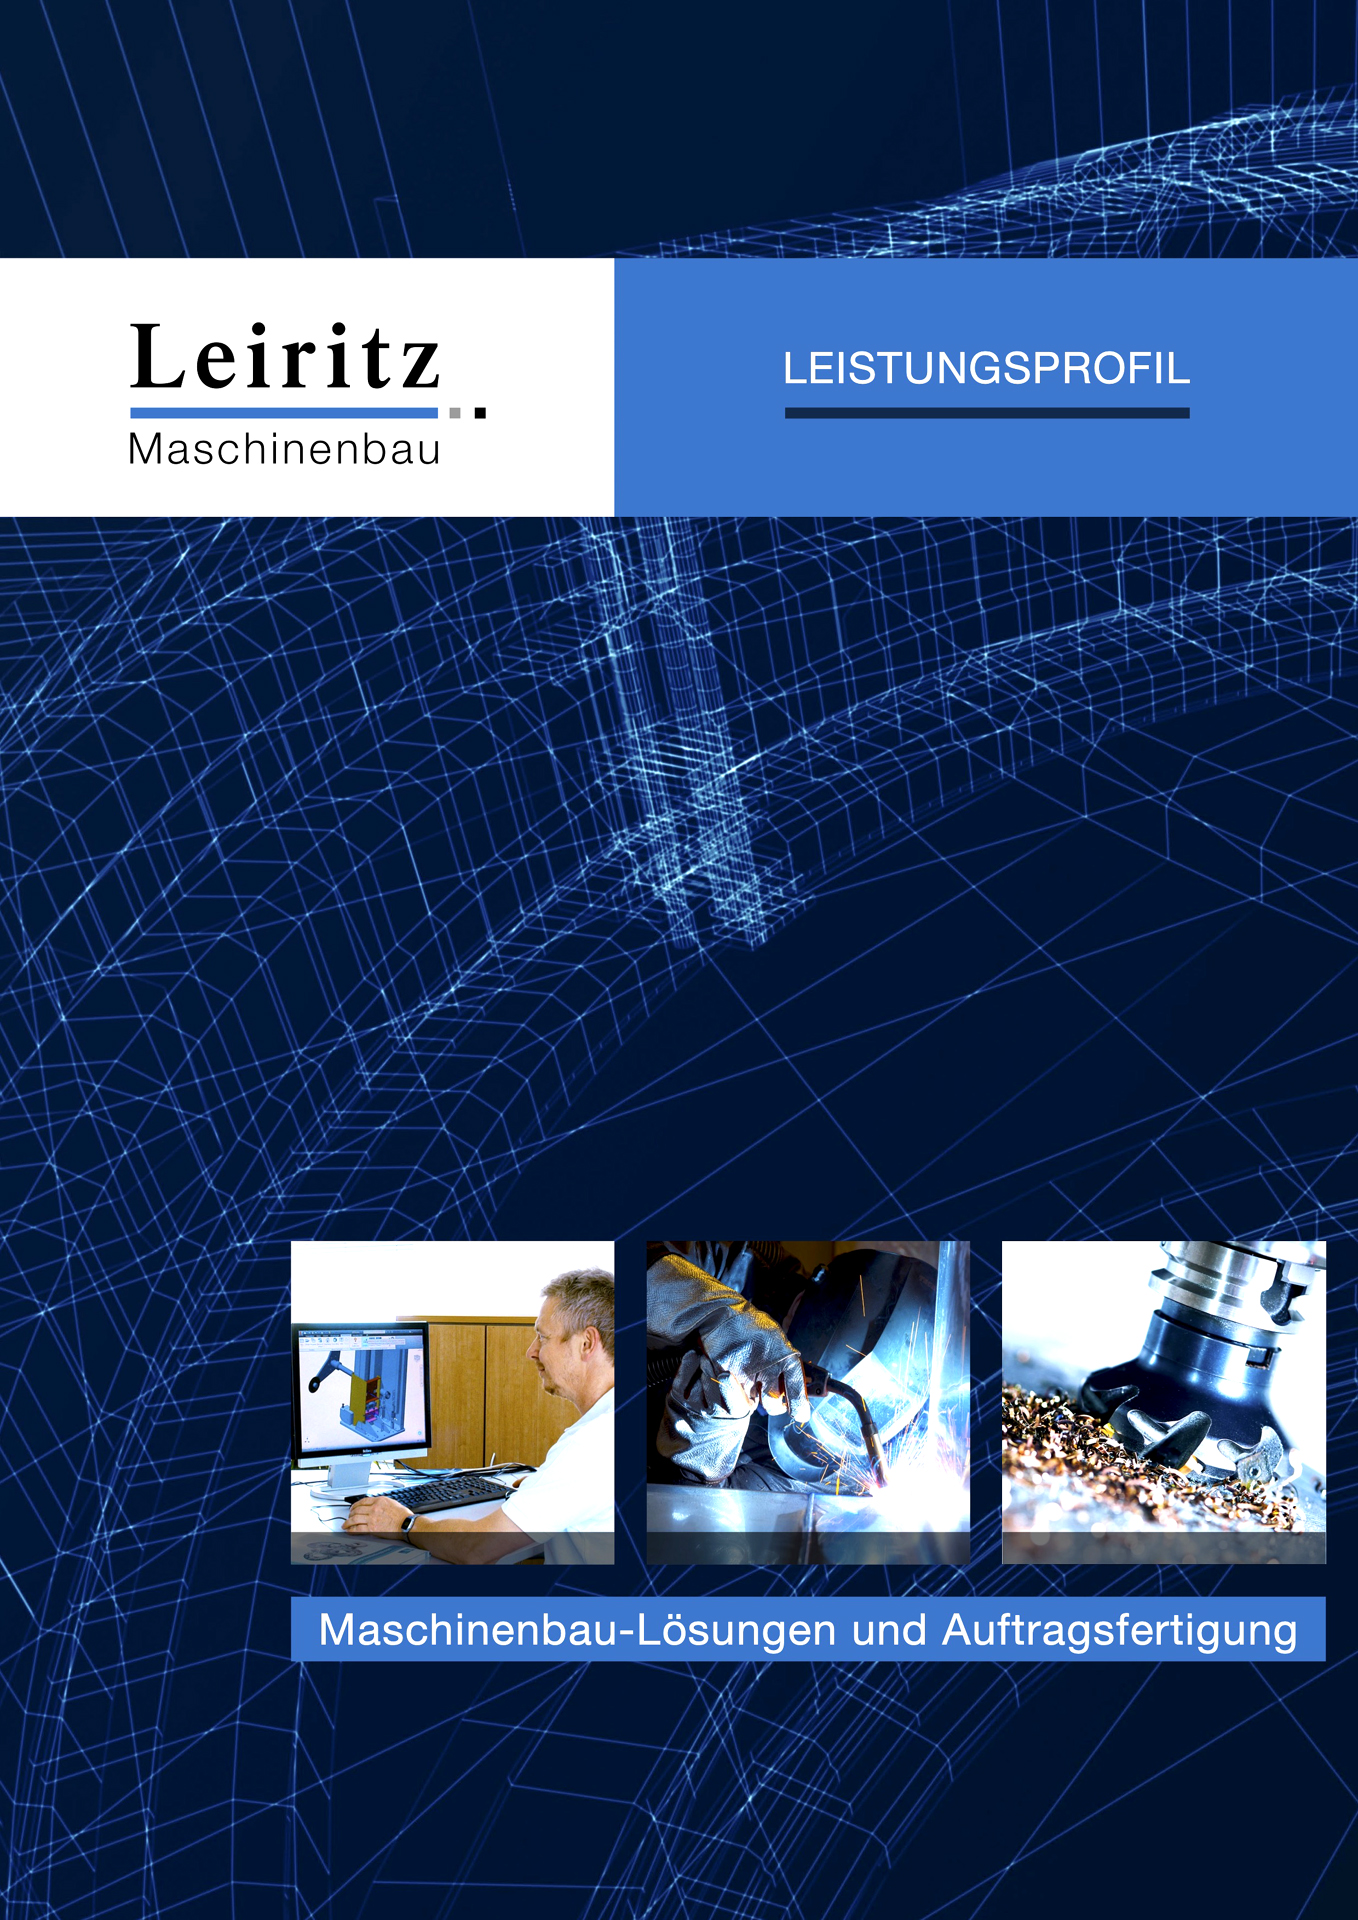 In dieser Firmen Broschüre sehen Sie das gesamte Leistungsprofil des Maschinenbau Herstellers Leiritz aus Süddeutschland.